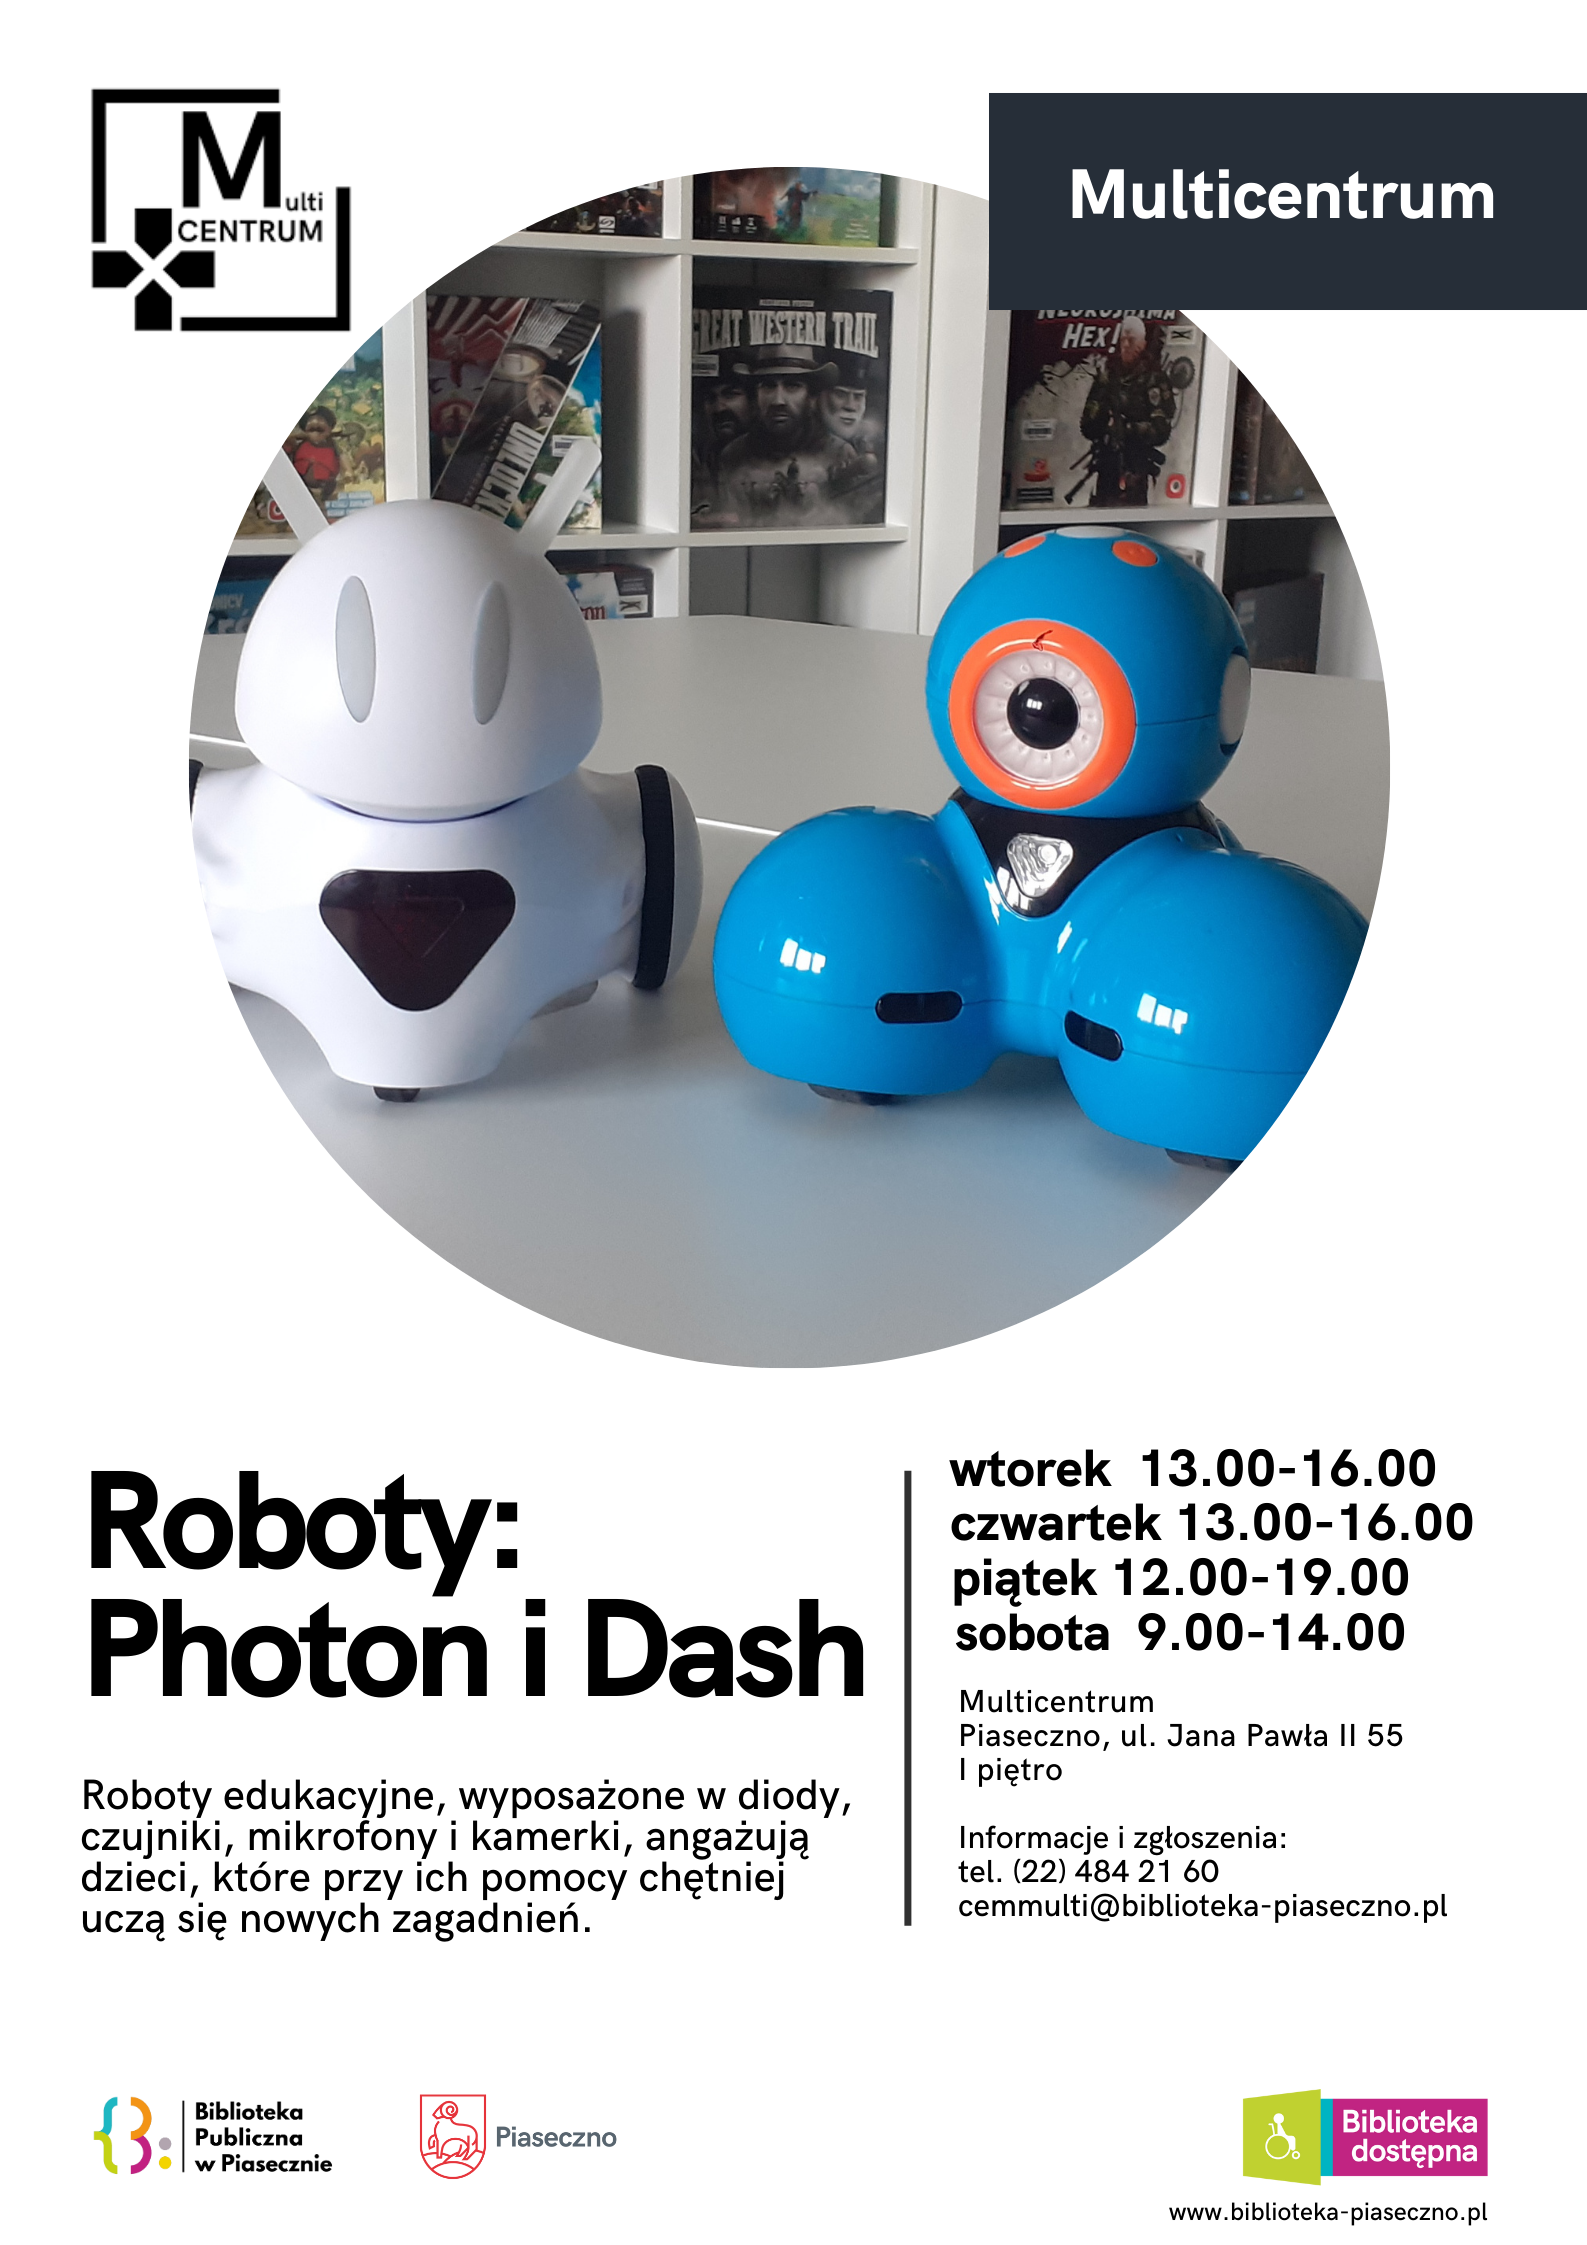 Roboty Photon i Dash